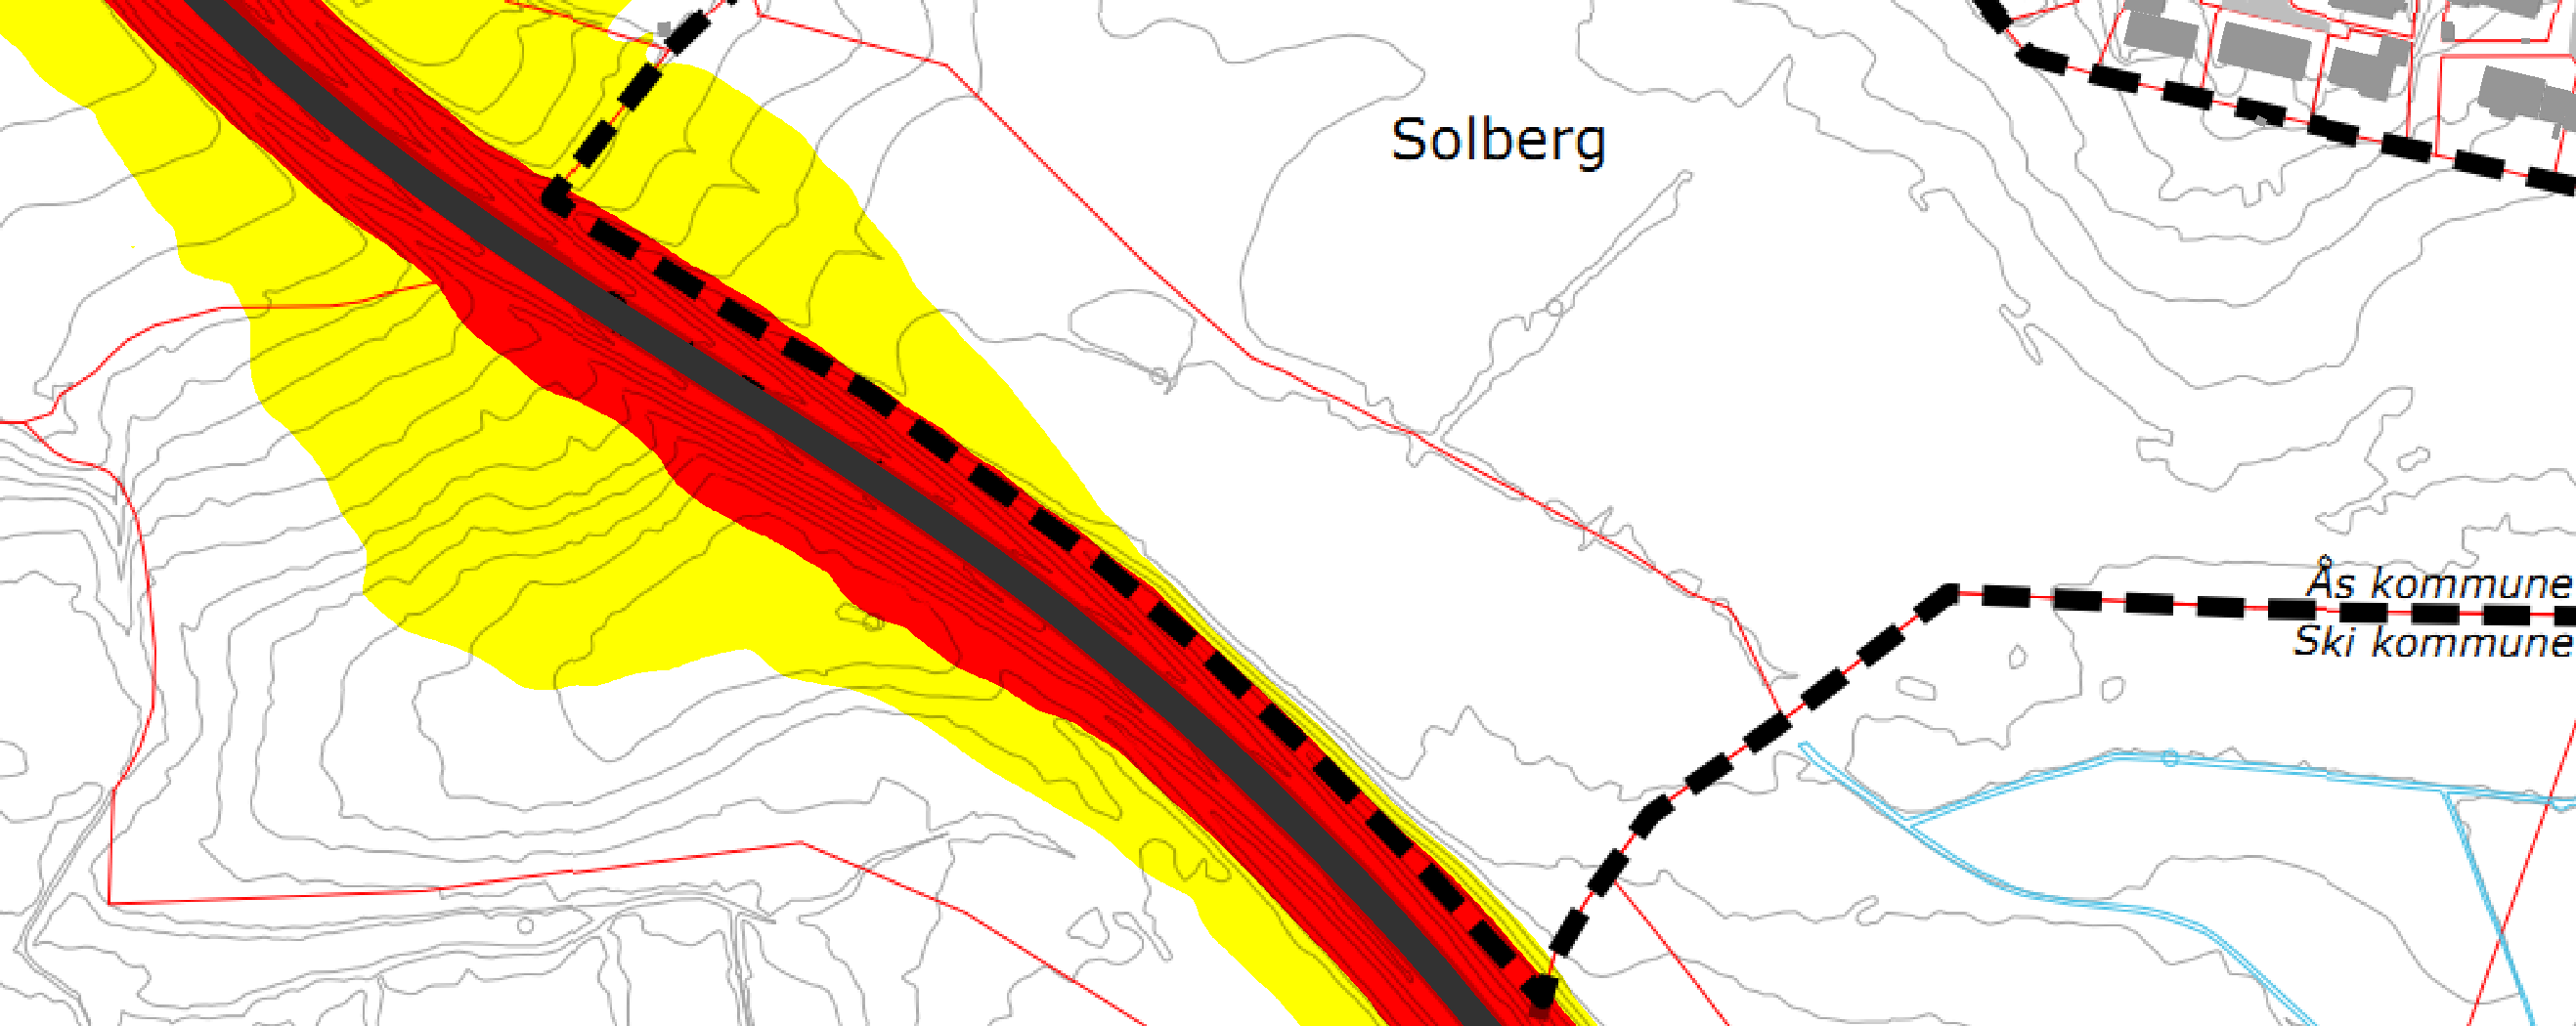 ROS-ANALYSE 15 (29) 11 Luftforurensning Den viktigste kilden til luftforurensning i Norge i dag er trafikk.